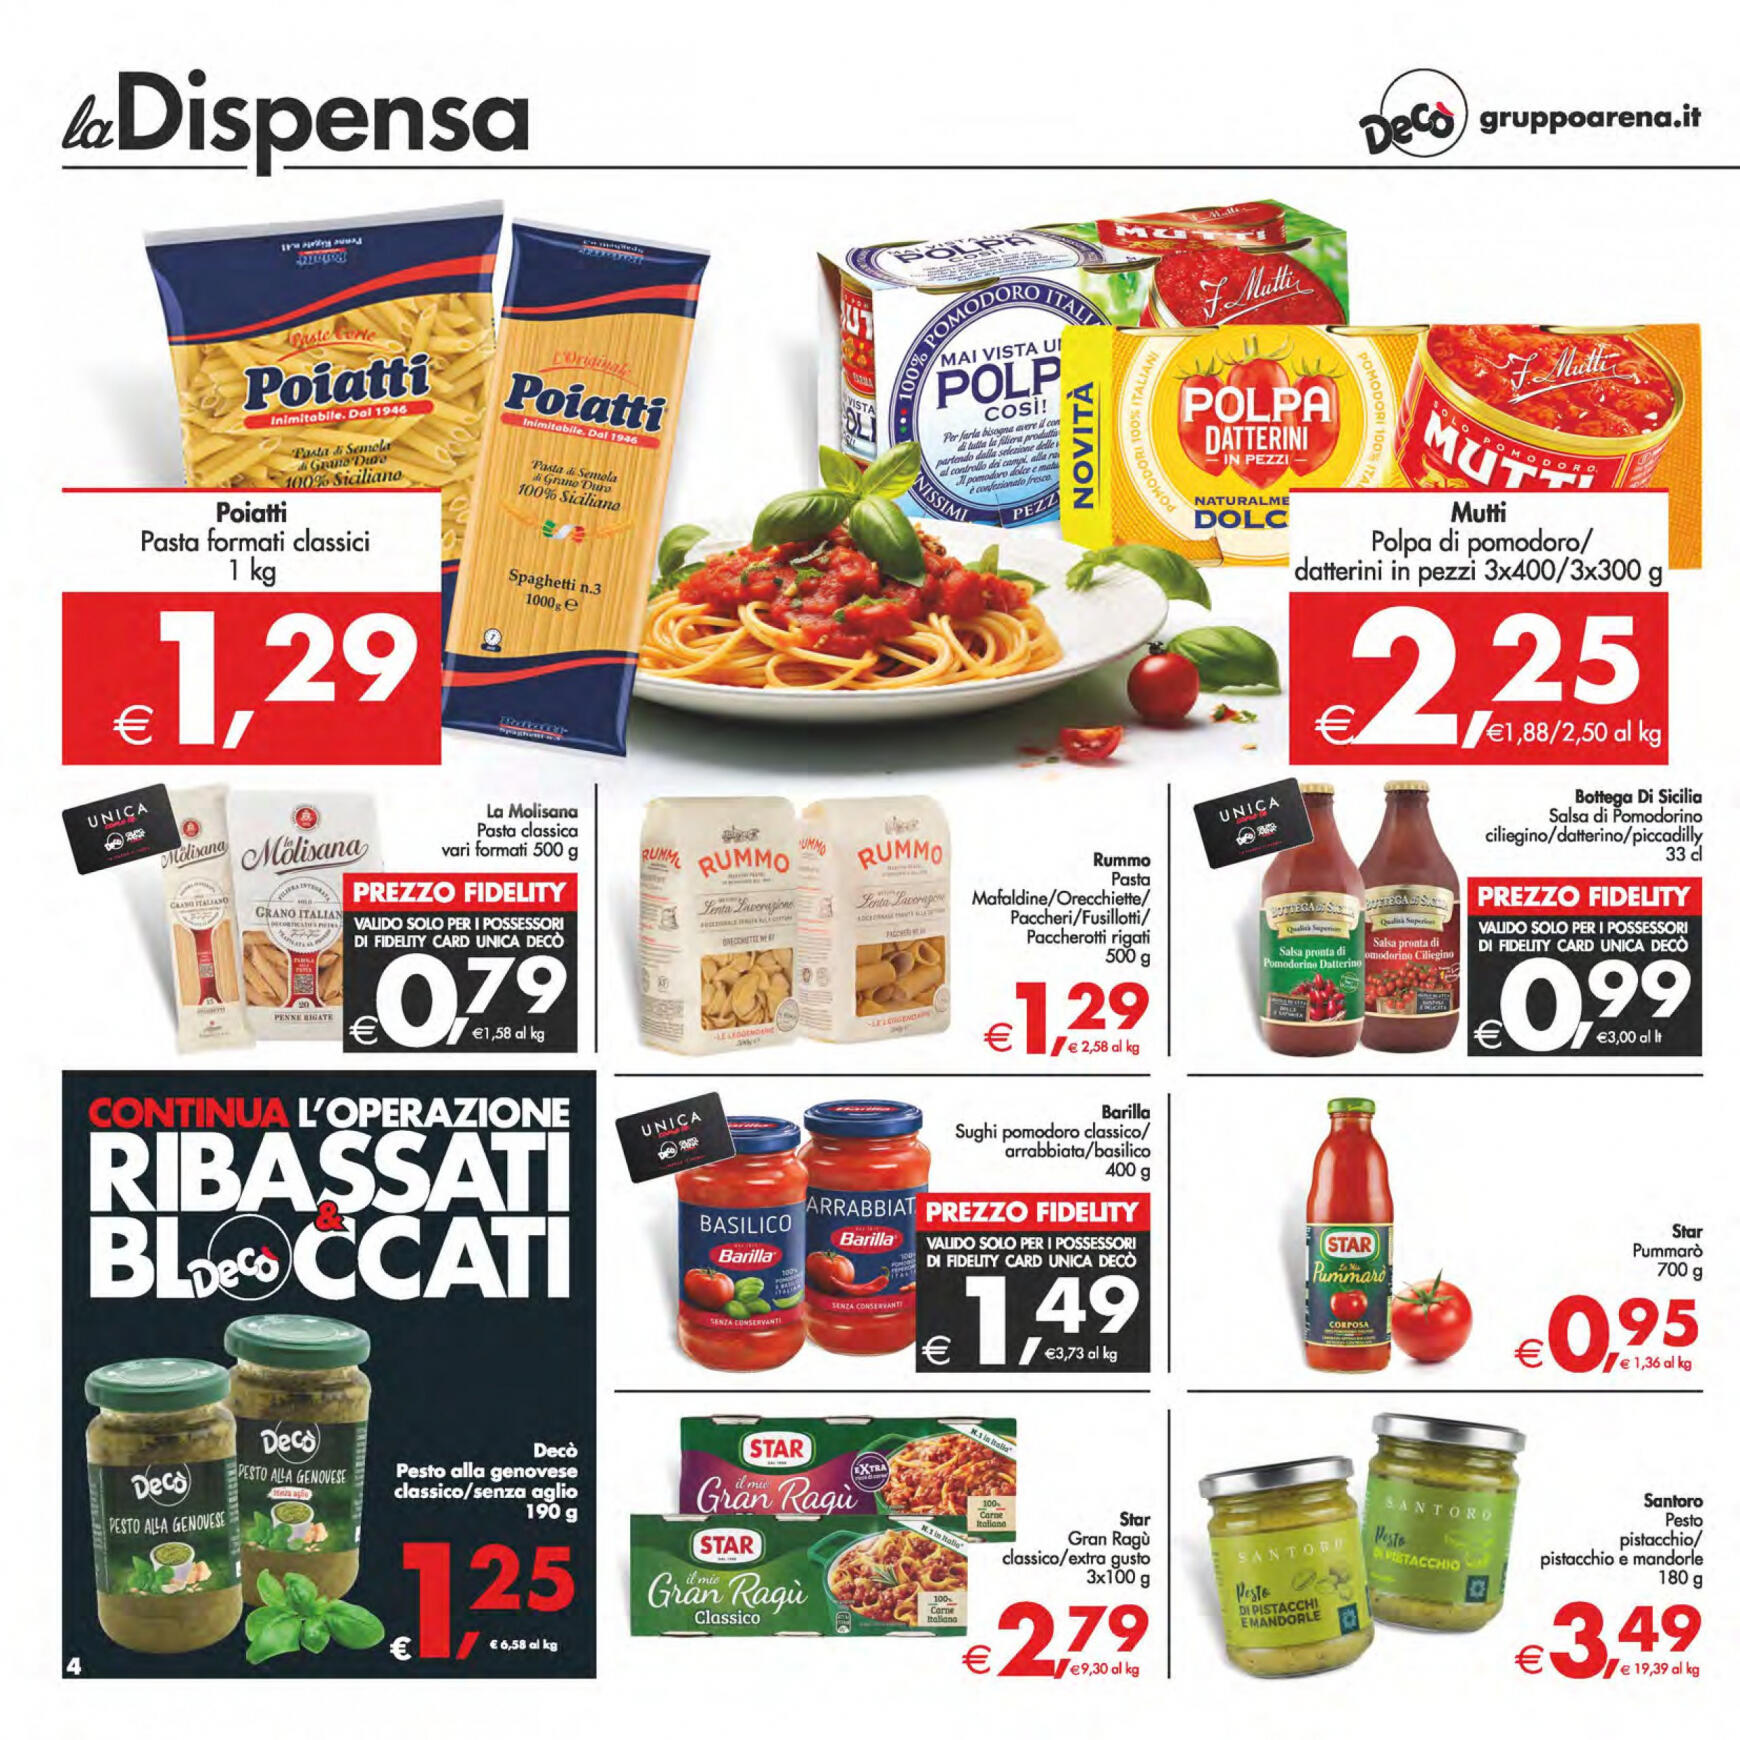 deco - Nuovo volantino Decò - Maxistore/Supermercati/Local 14.05. - 23.05. - page: 4